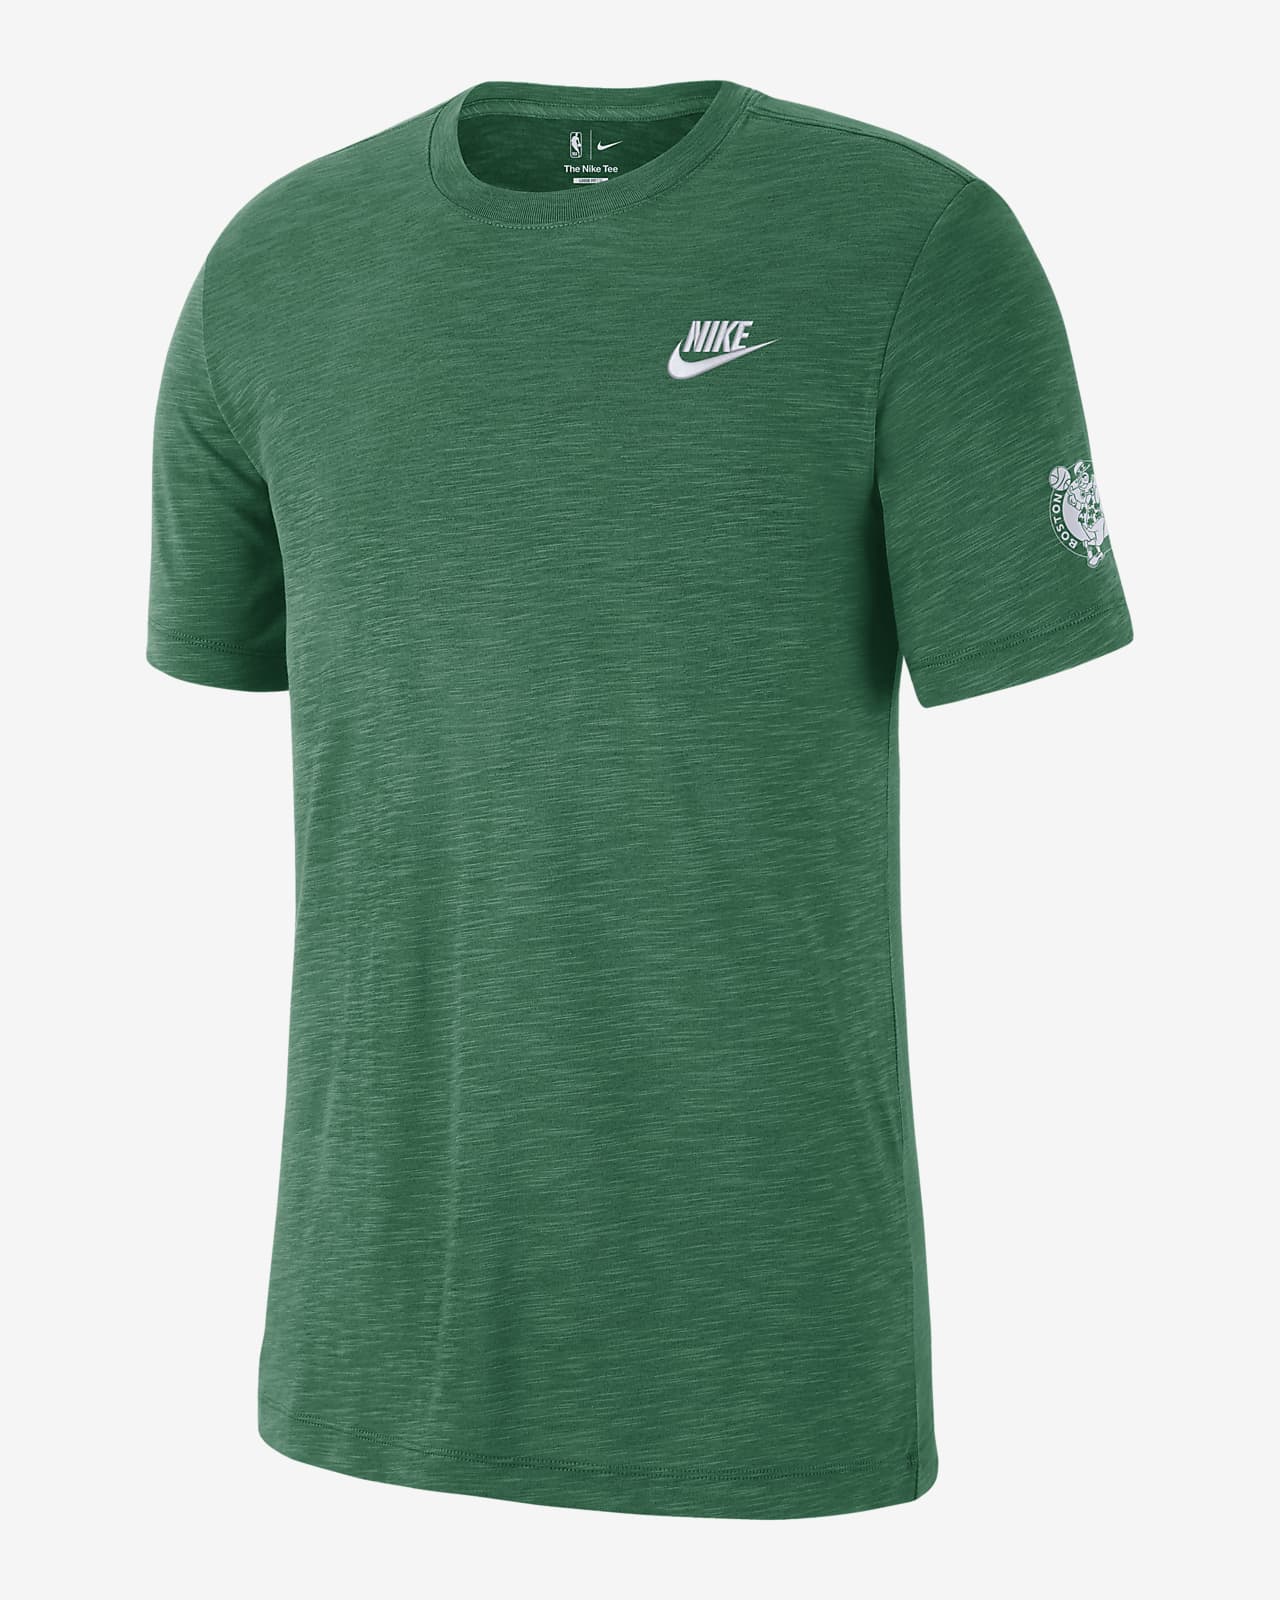 Playera Nike de la NBA para hombre Boston Celtics Essential Club